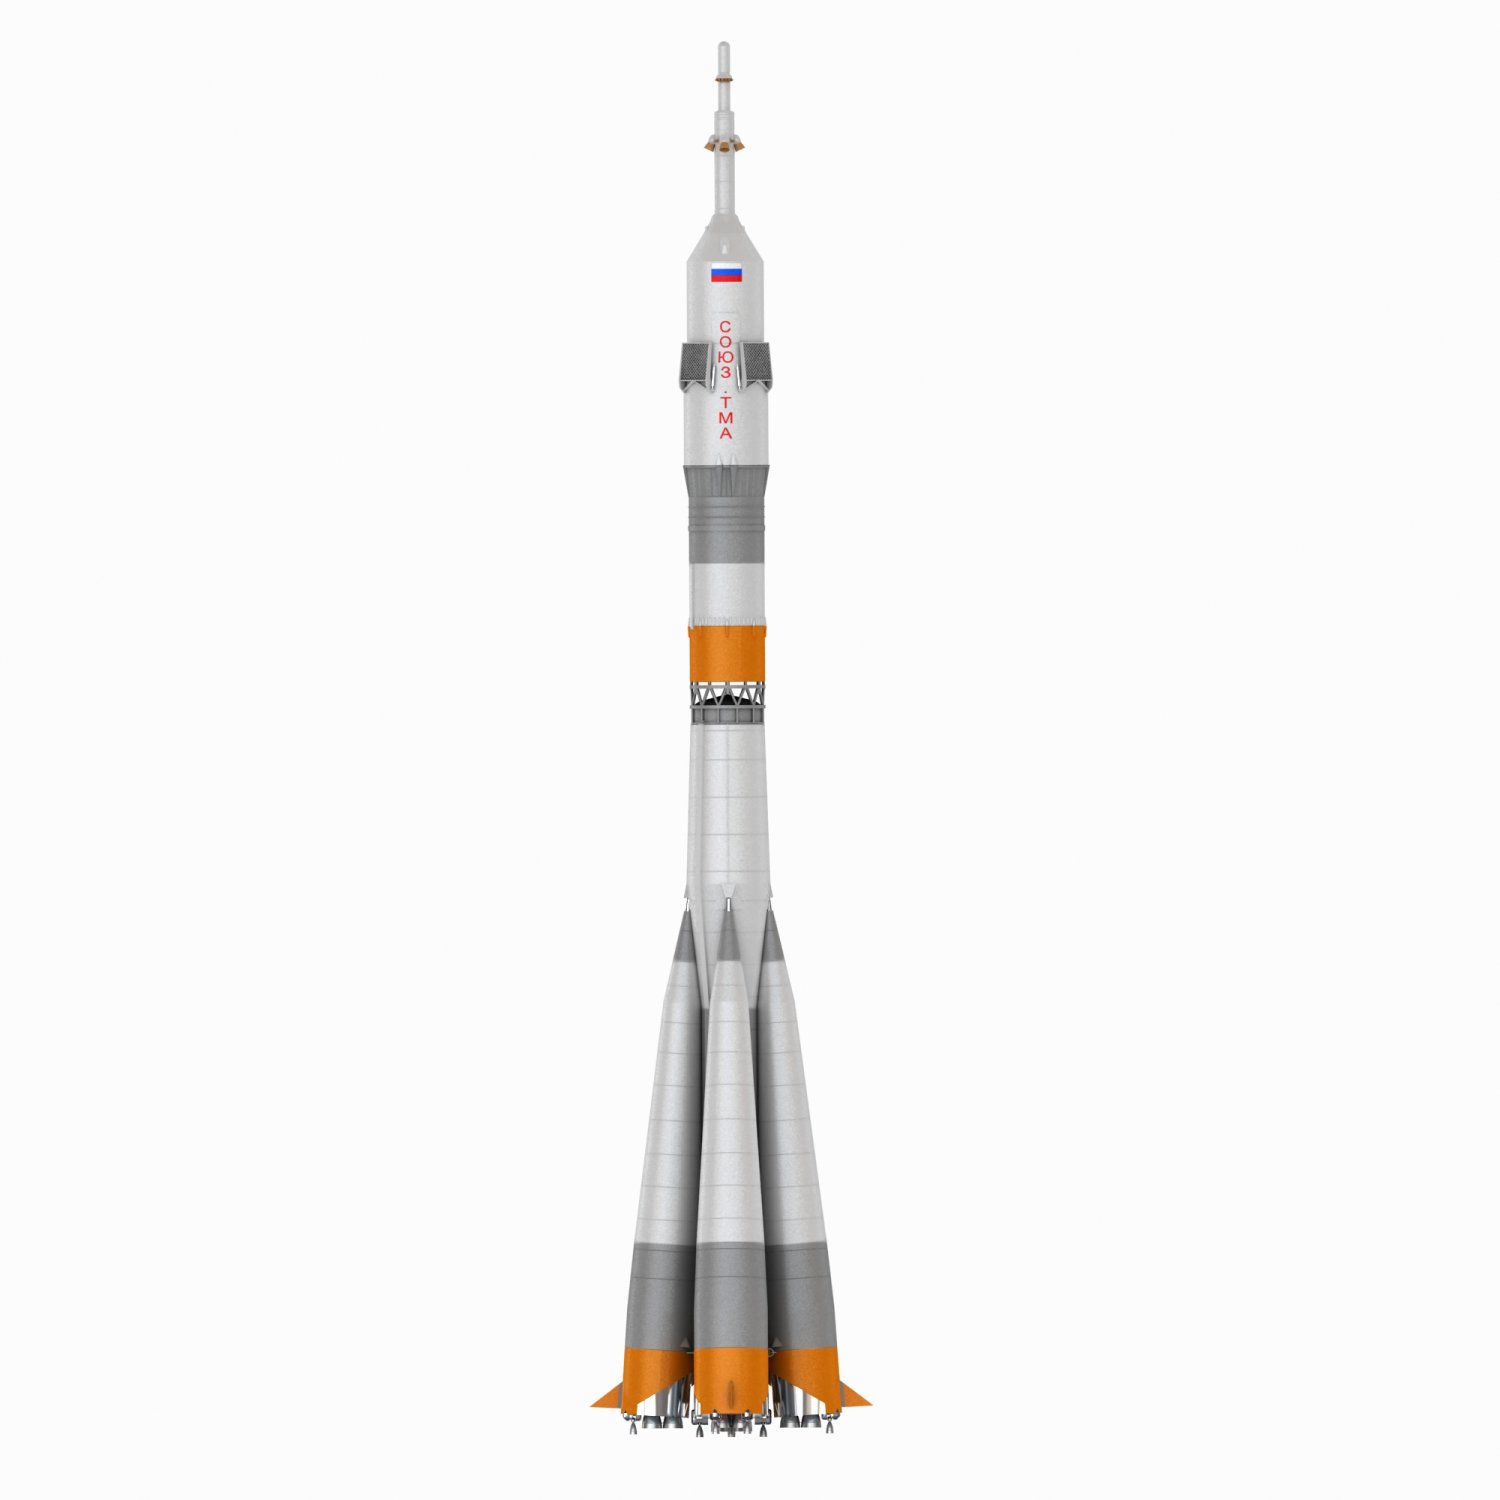 Soyuz rocket 3D Model in Real Spacecraft 3DExport